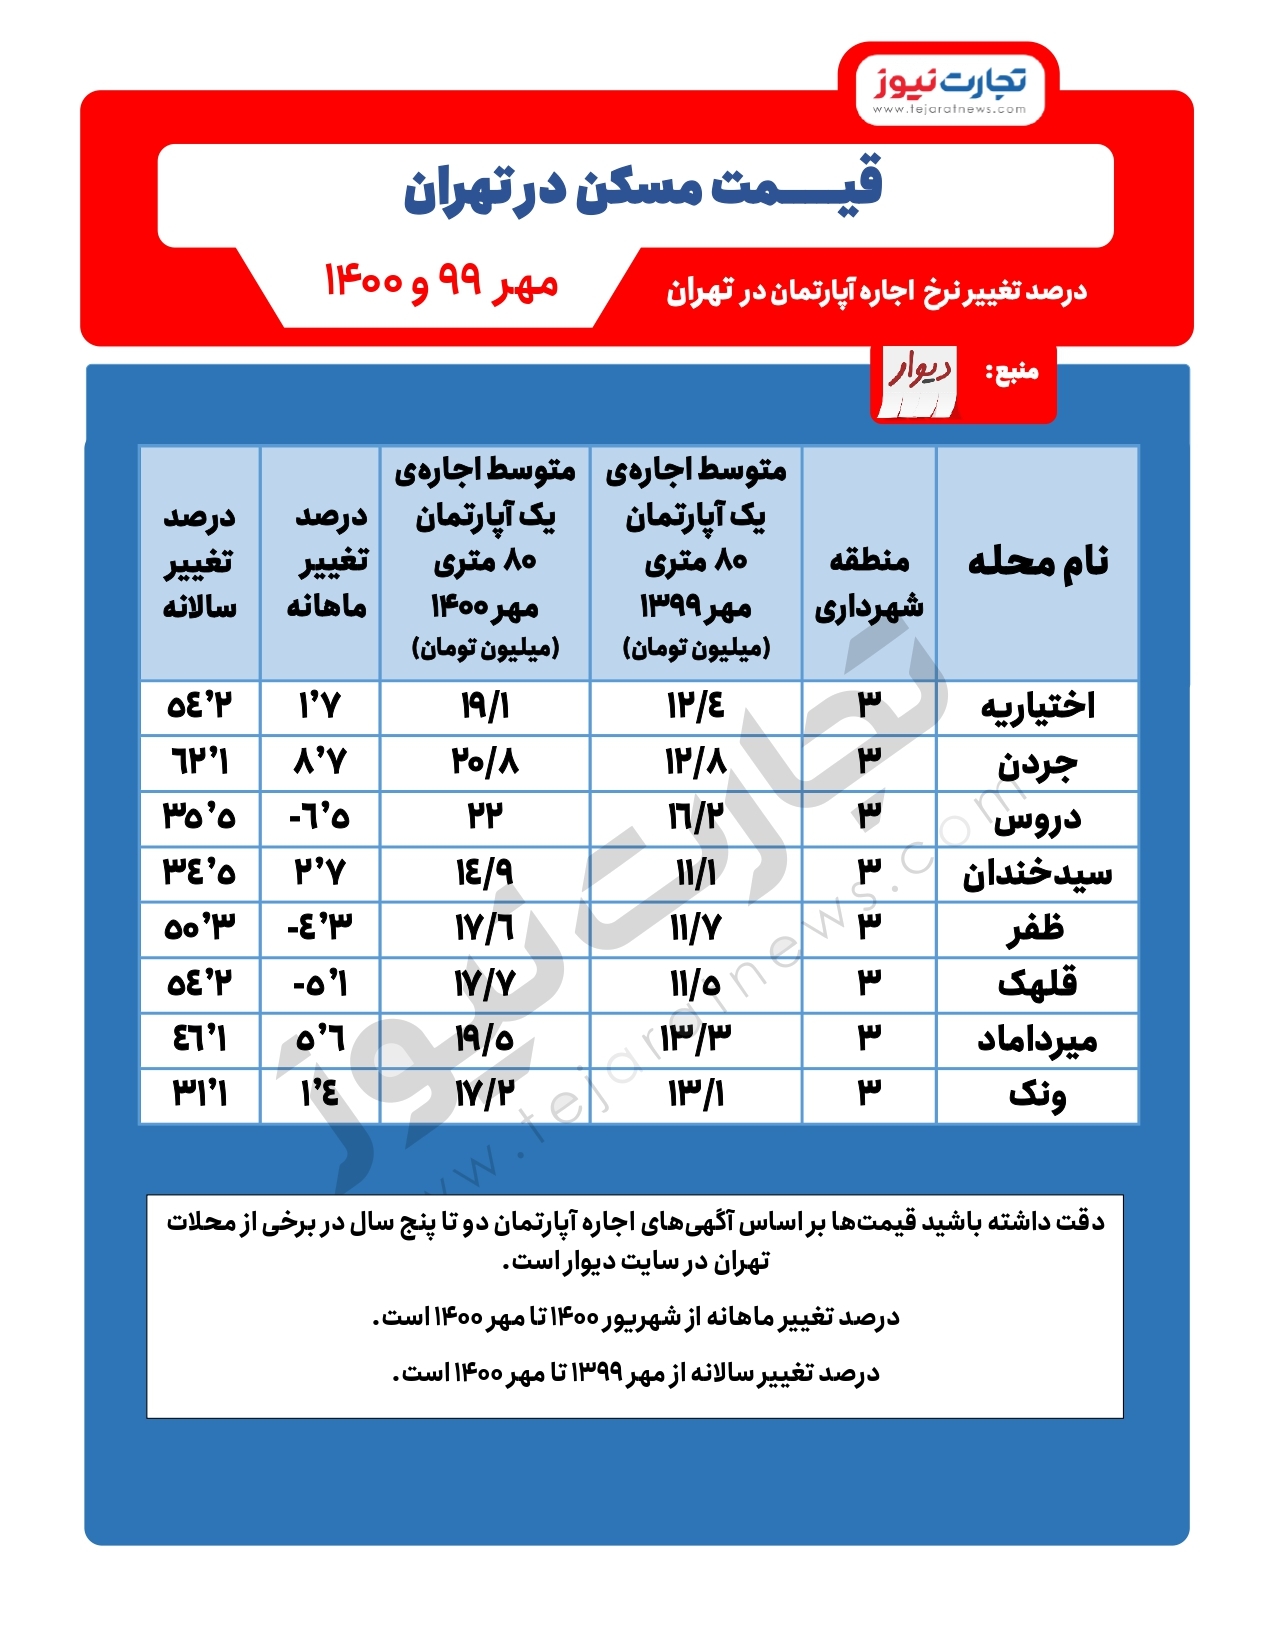 افزایش قیمت مسکن در مناطق شمال تهران/ افزایش ۶۲ درصدی اجاره در جردن